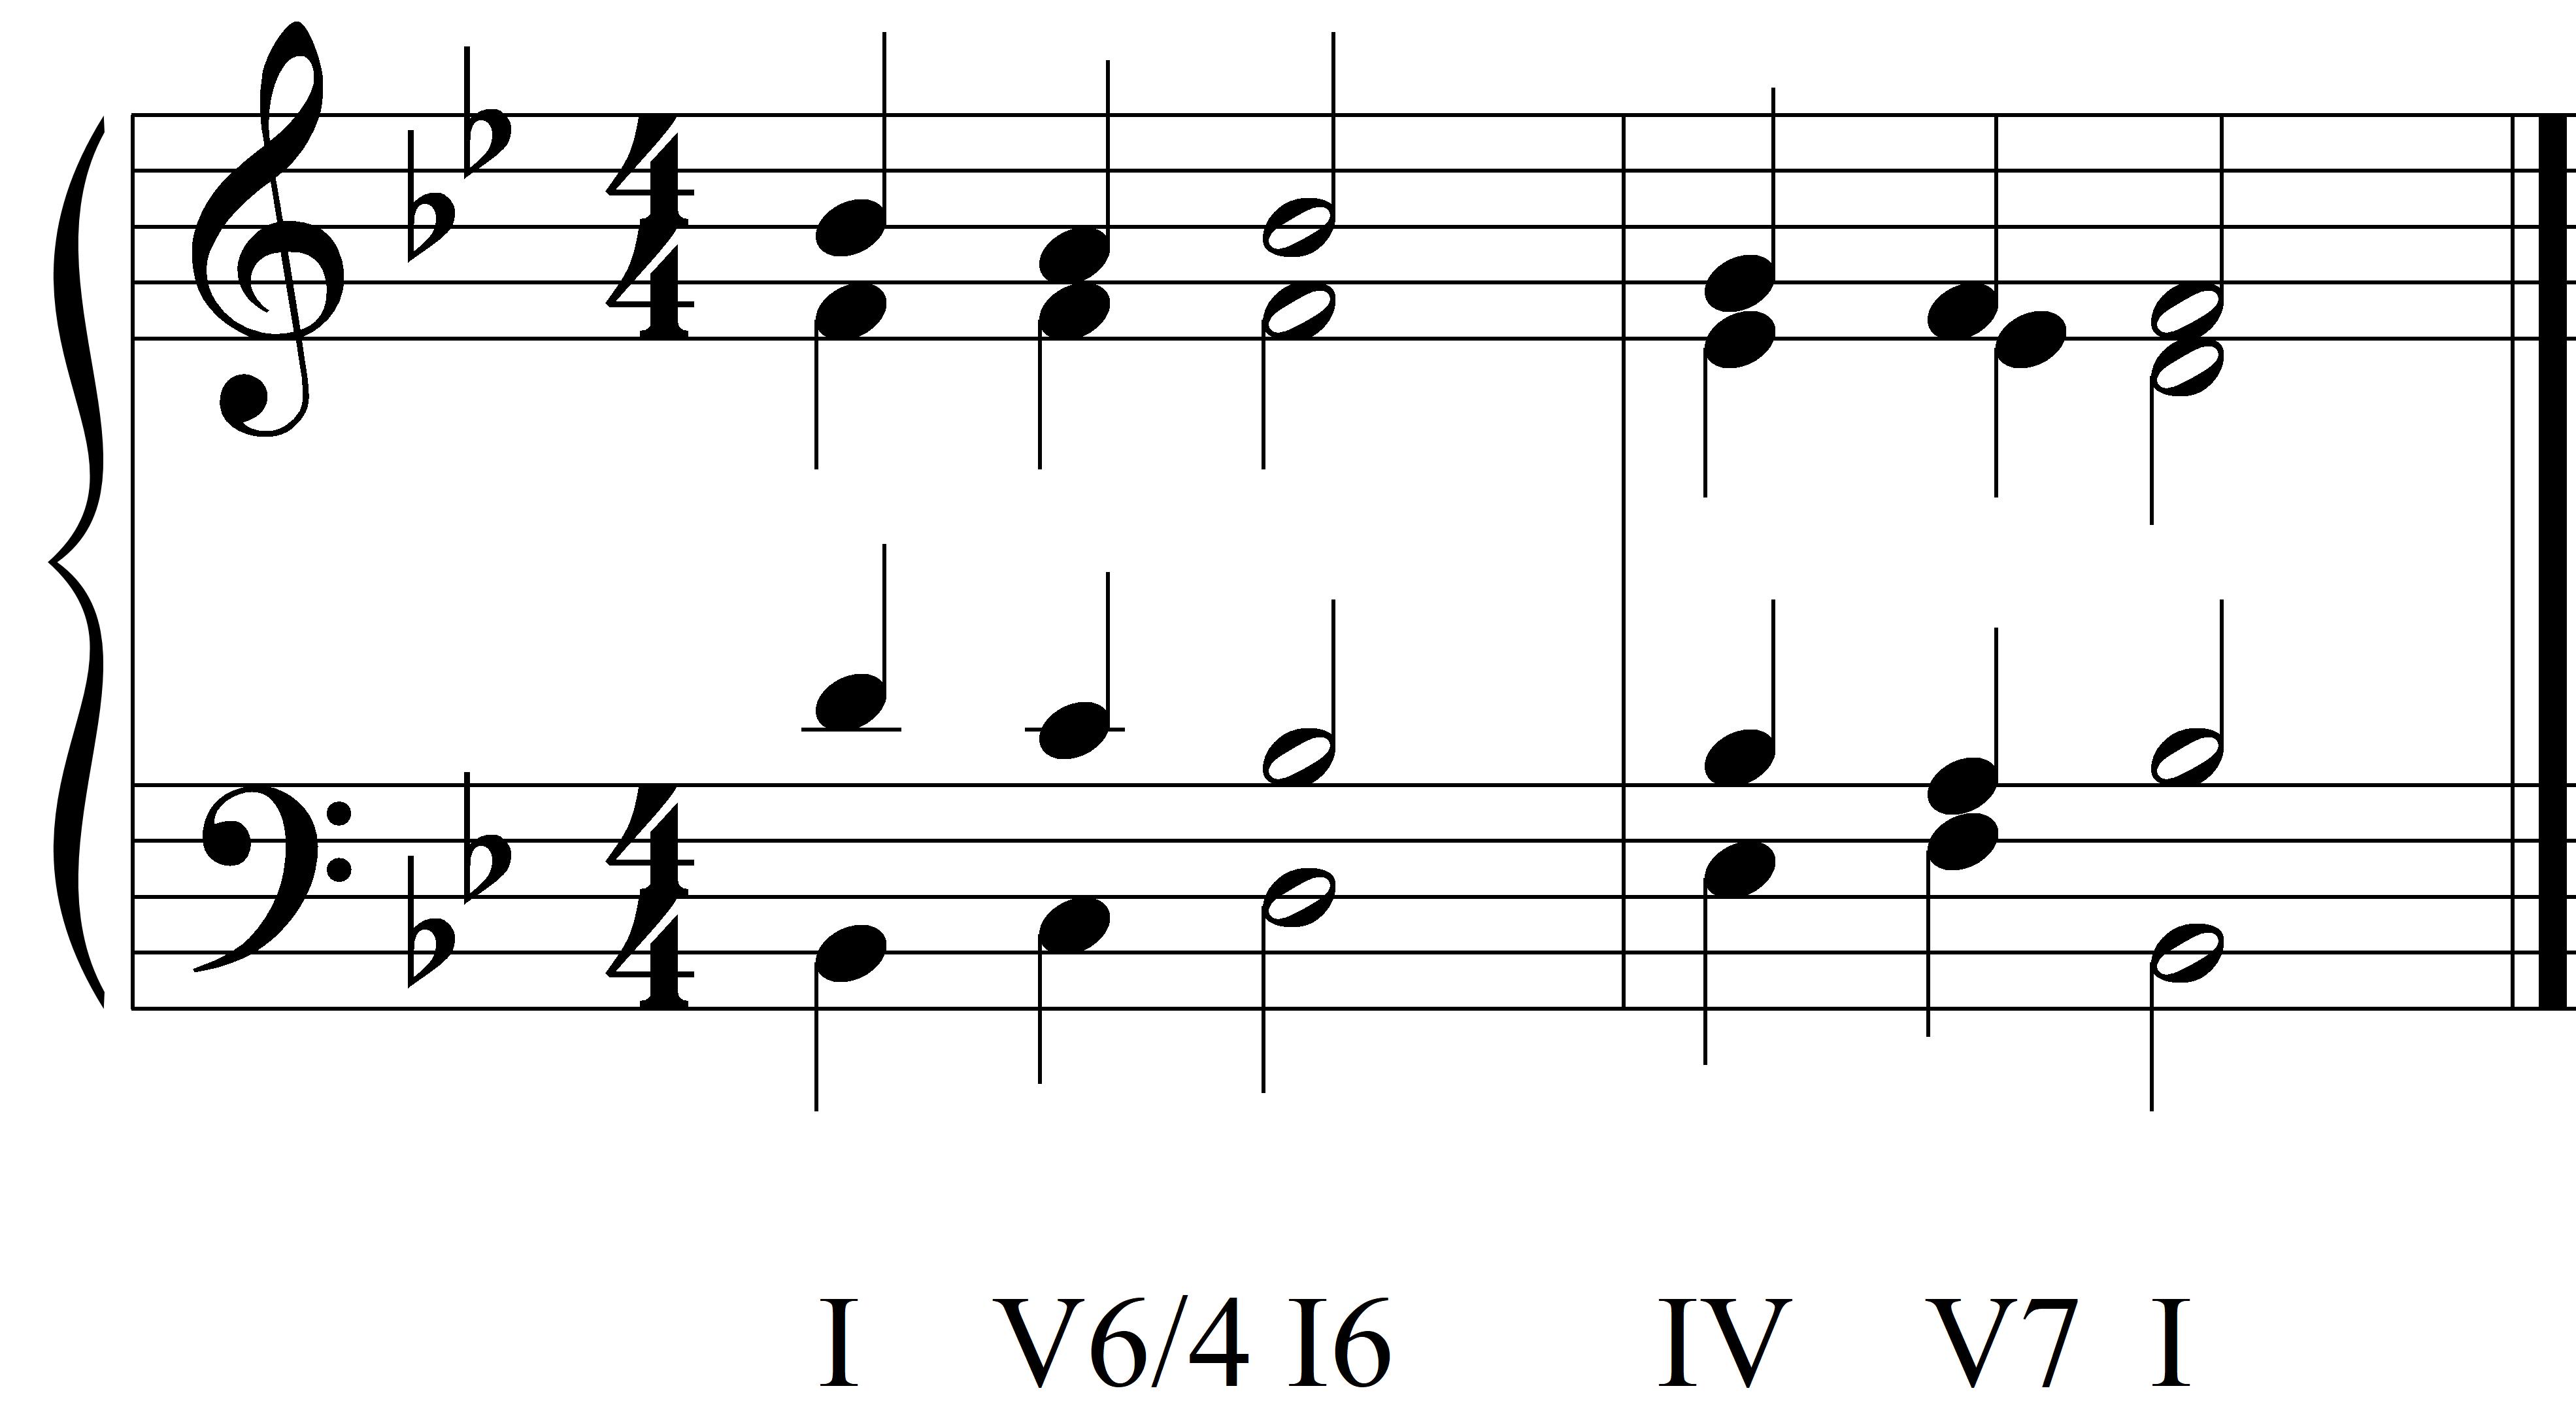 chord progression aural training